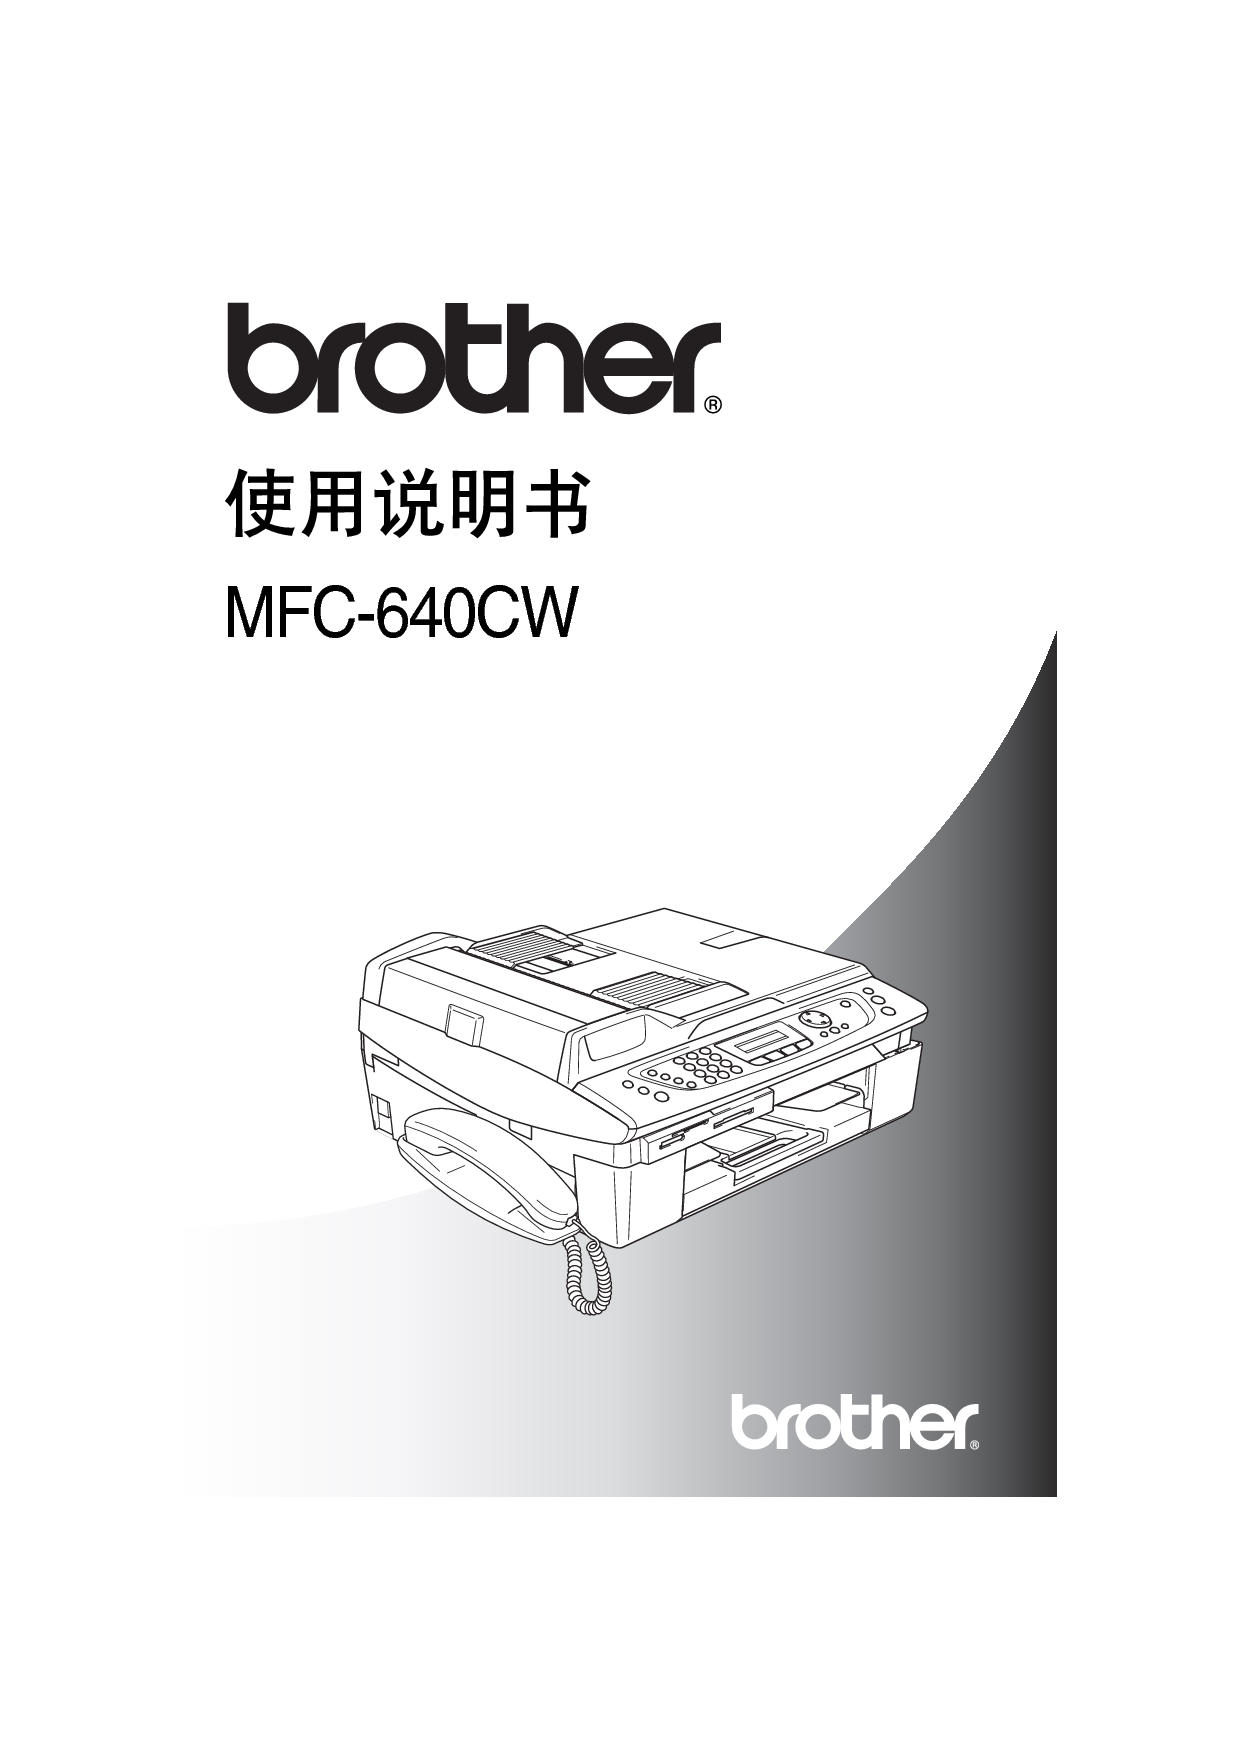 兄弟 Brother MFC-640CW 使用说明书 封面